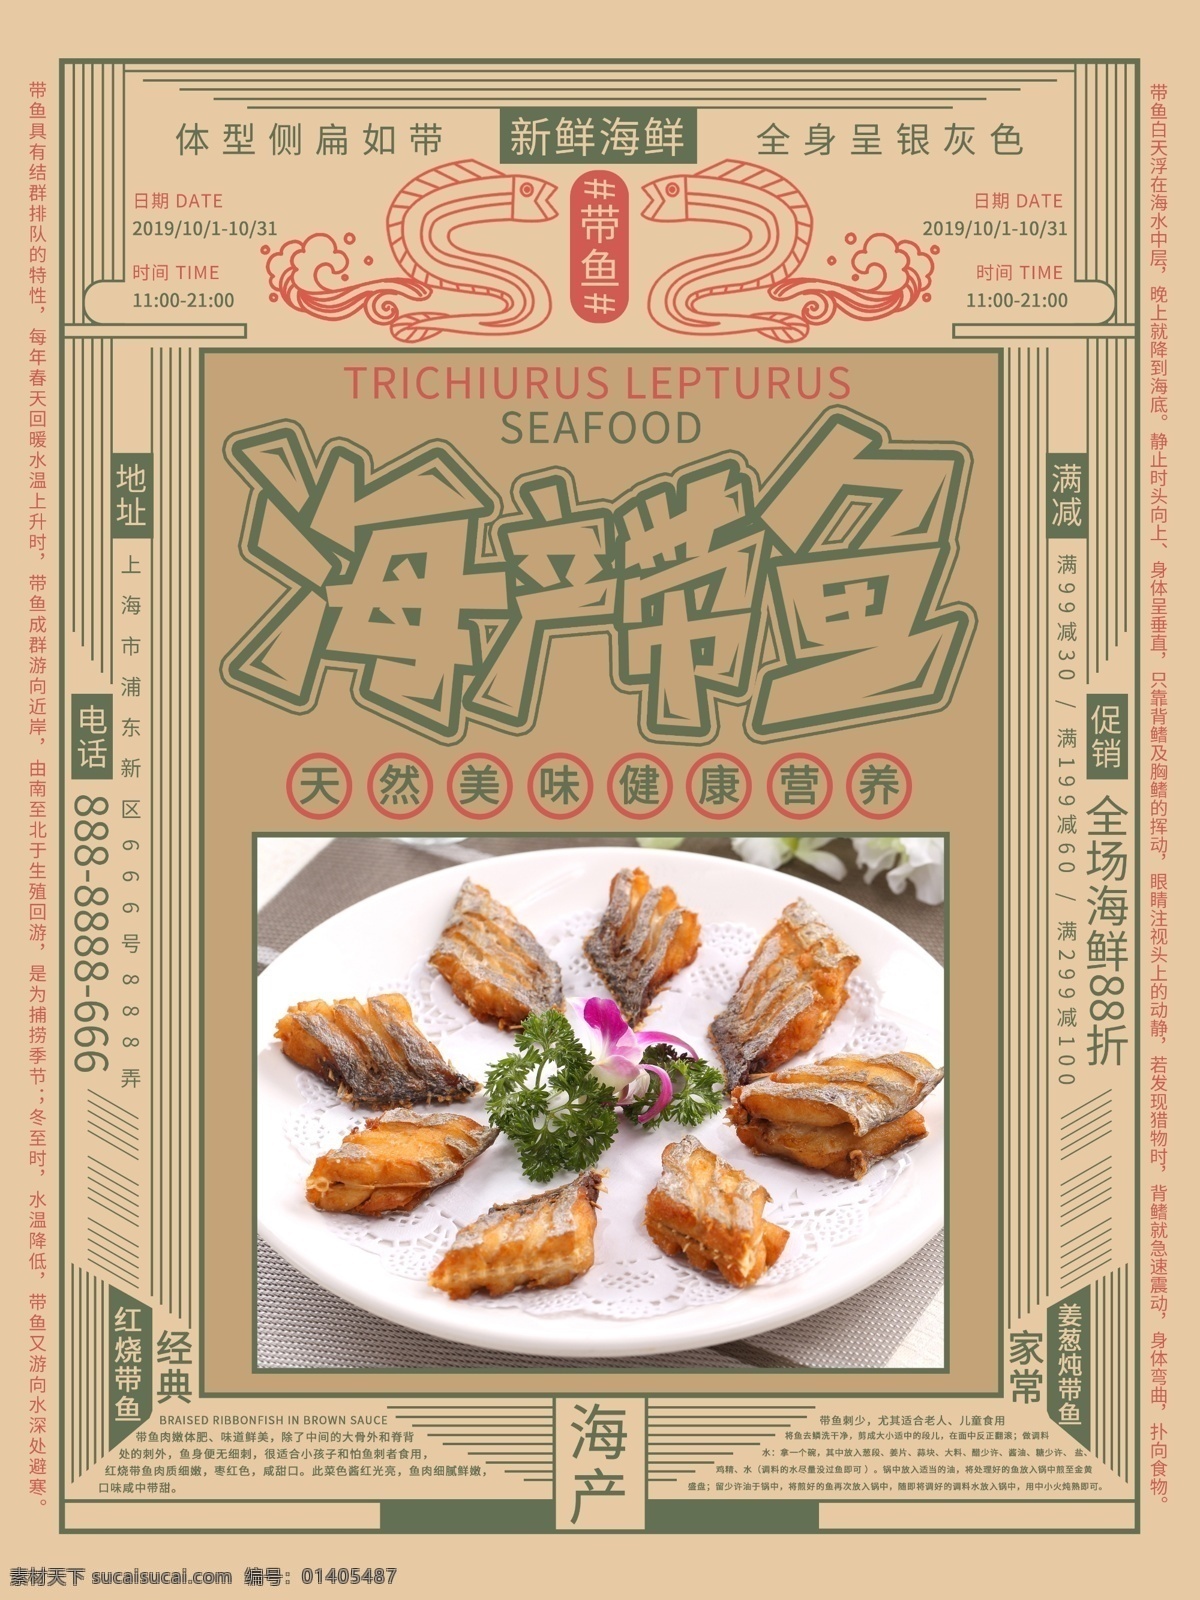 复古 海产 带鱼 促销 宣传海报 复古风 海鲜 健康 美食 新鲜 美味 鱼 满减活动 海报 宣传单 菜式 美食海报